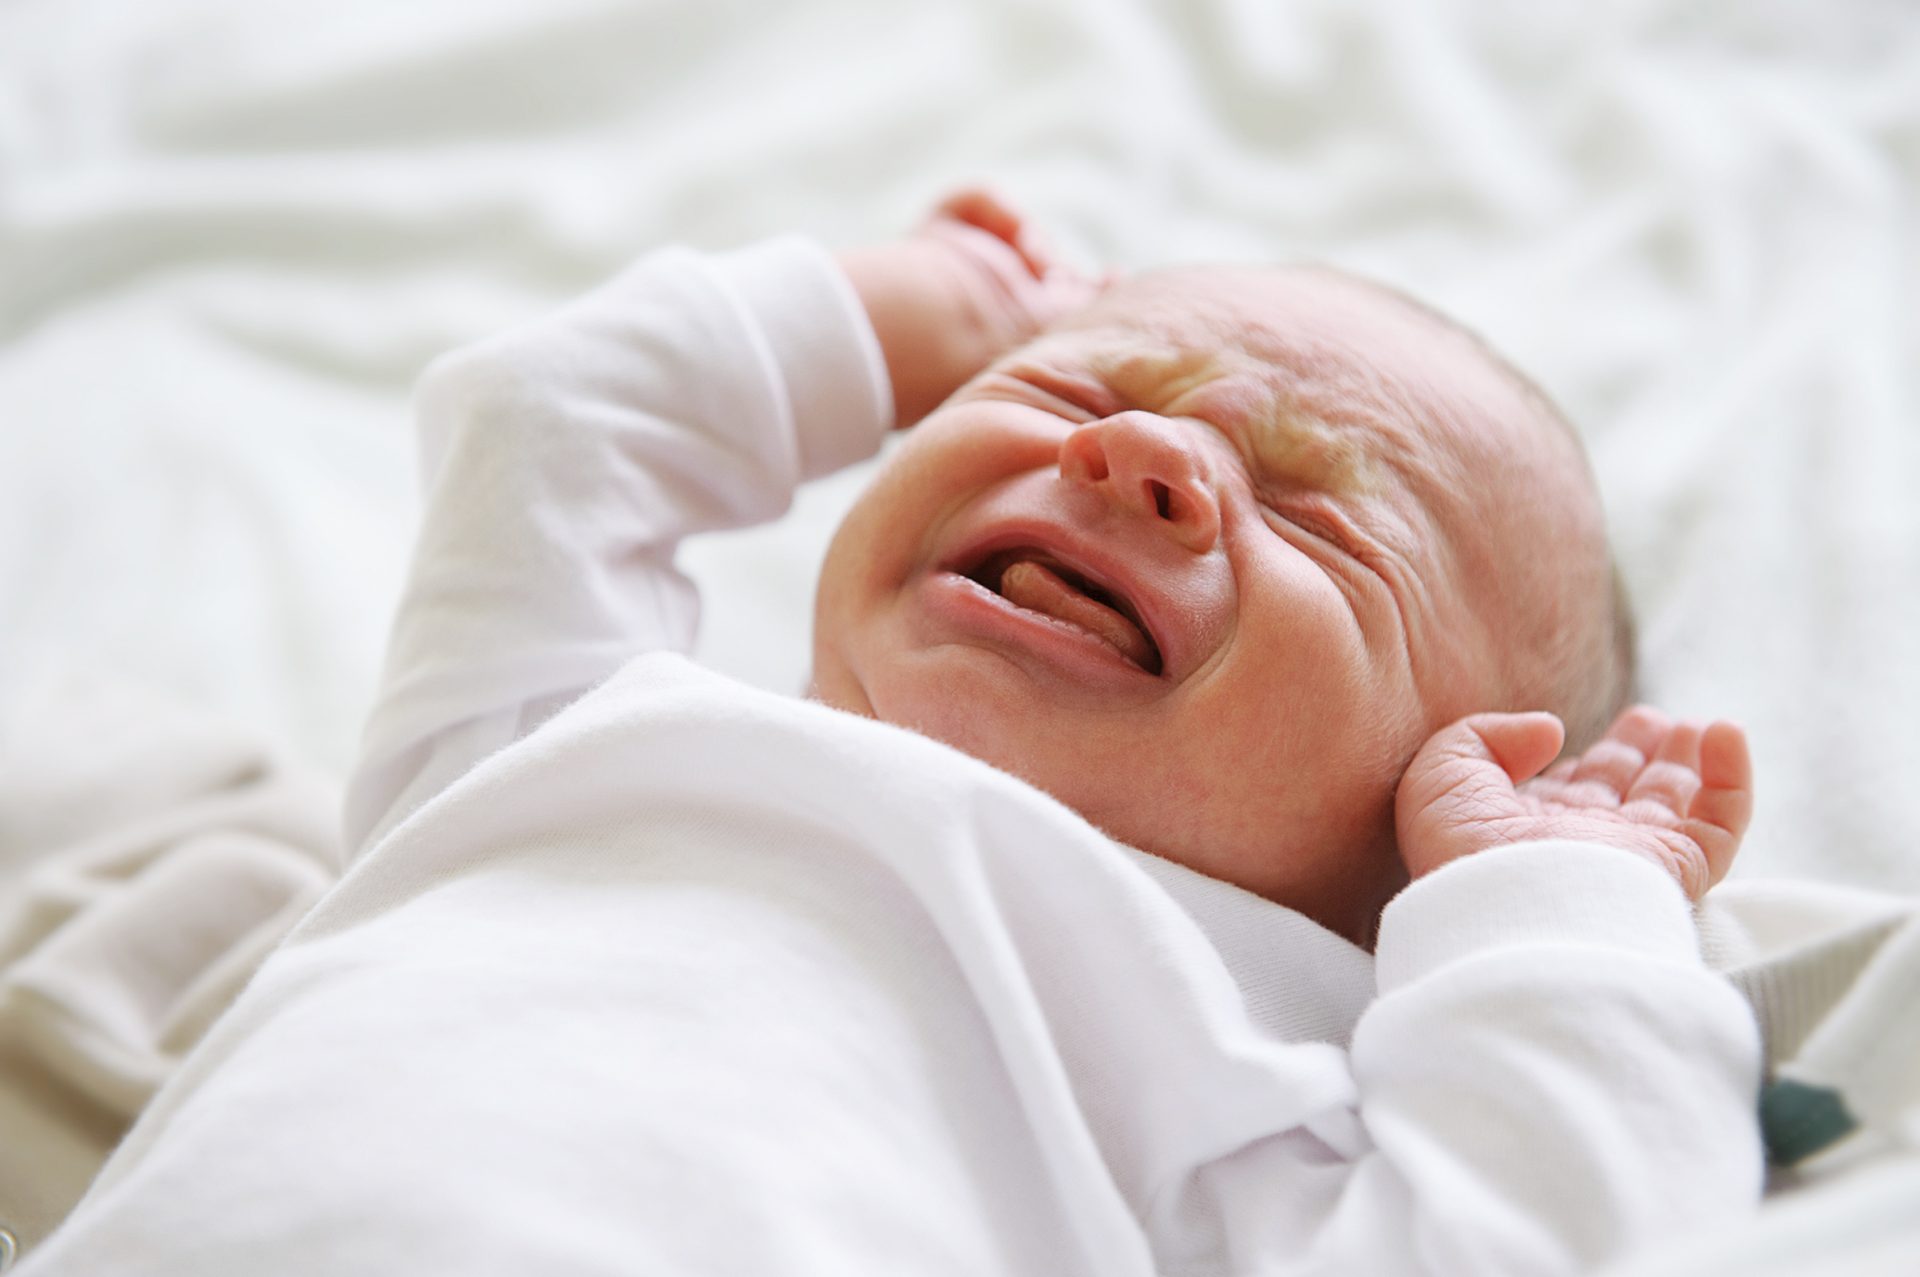 Pediatra ensina truque para bebés pararem de chorar [vídeo]